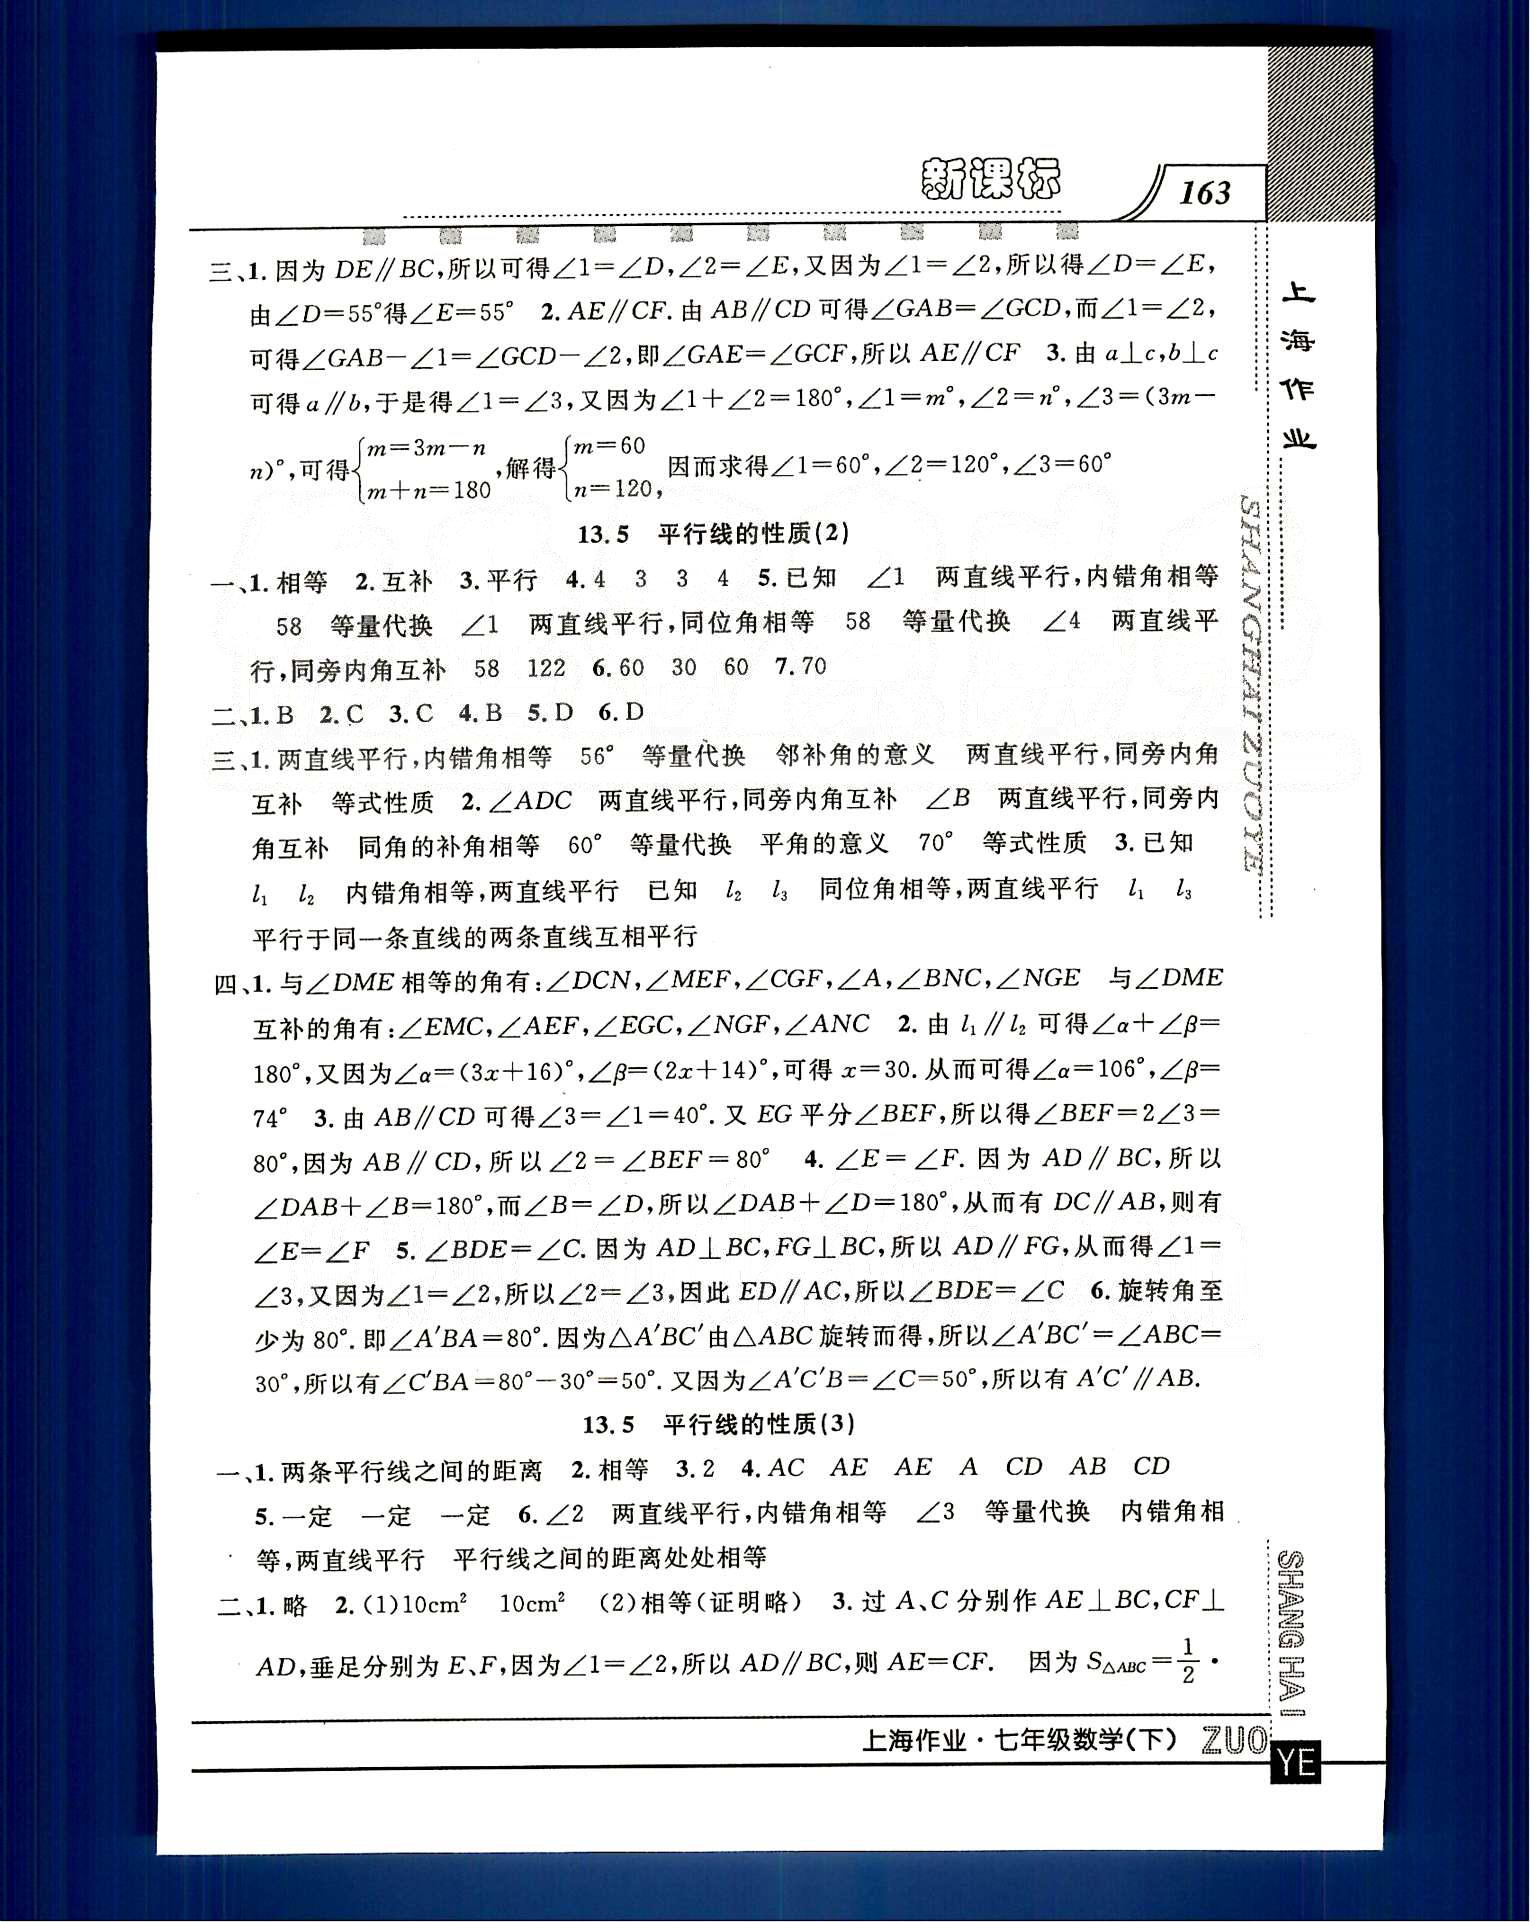 20145 钟书金牌 上海作业七年级下数学上海大学出版社 第十二章-第十三章 [7]